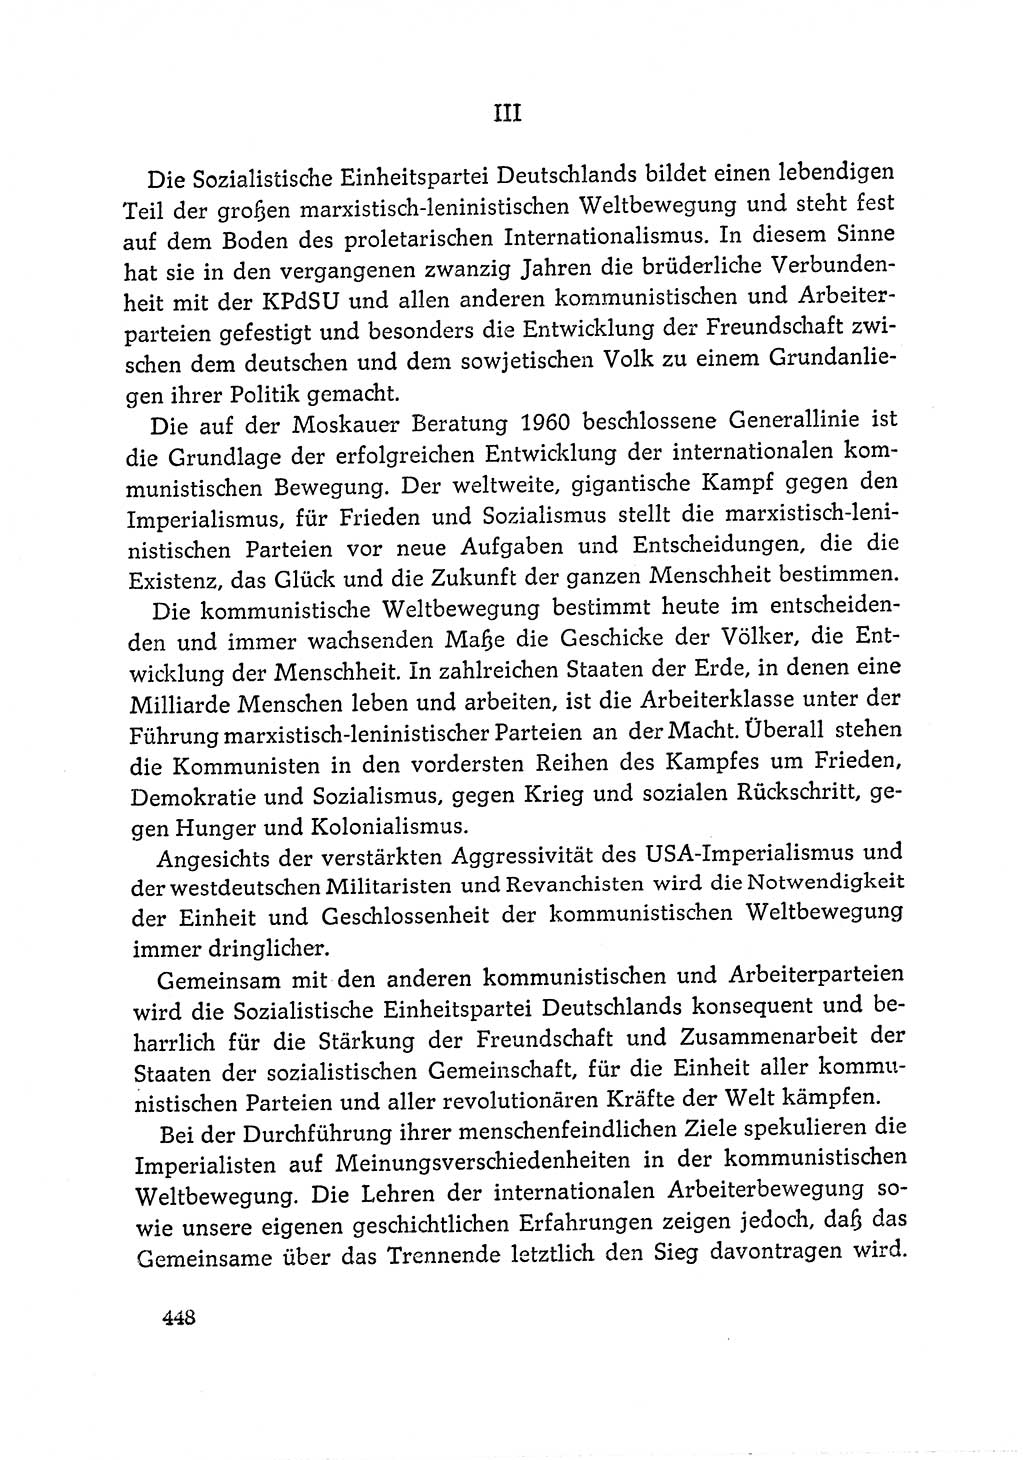 Dokumente der Sozialistischen Einheitspartei Deutschlands (SED) [Deutsche Demokratische Republik (DDR)] 1964-1965, Seite 448 (Dok. SED DDR 1964-1965, S. 448)